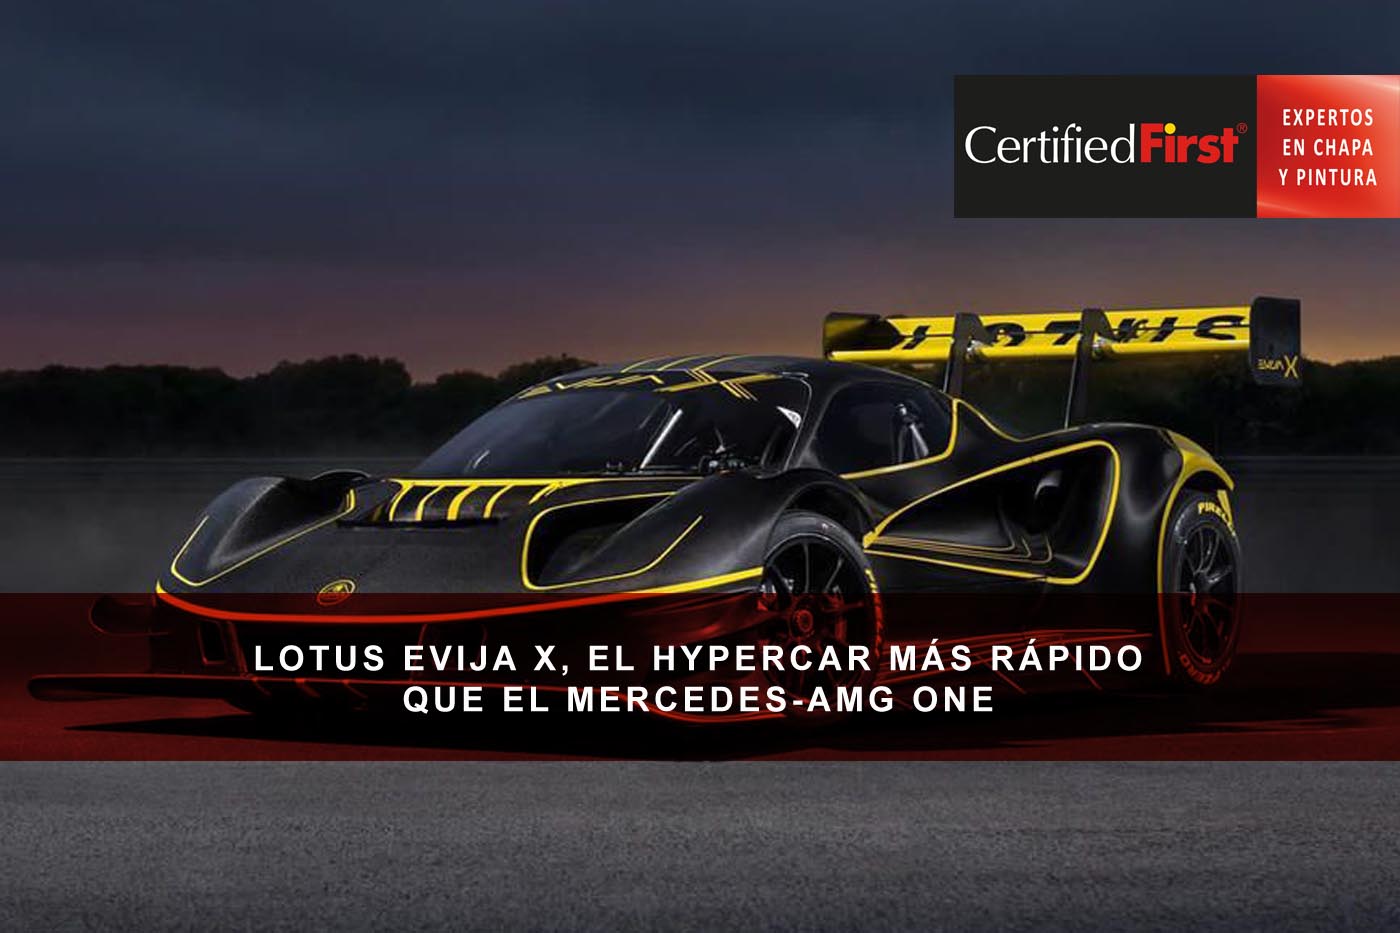 Lotus Evija X, el hypercar más rápido que el Mercedes-AMG ONE